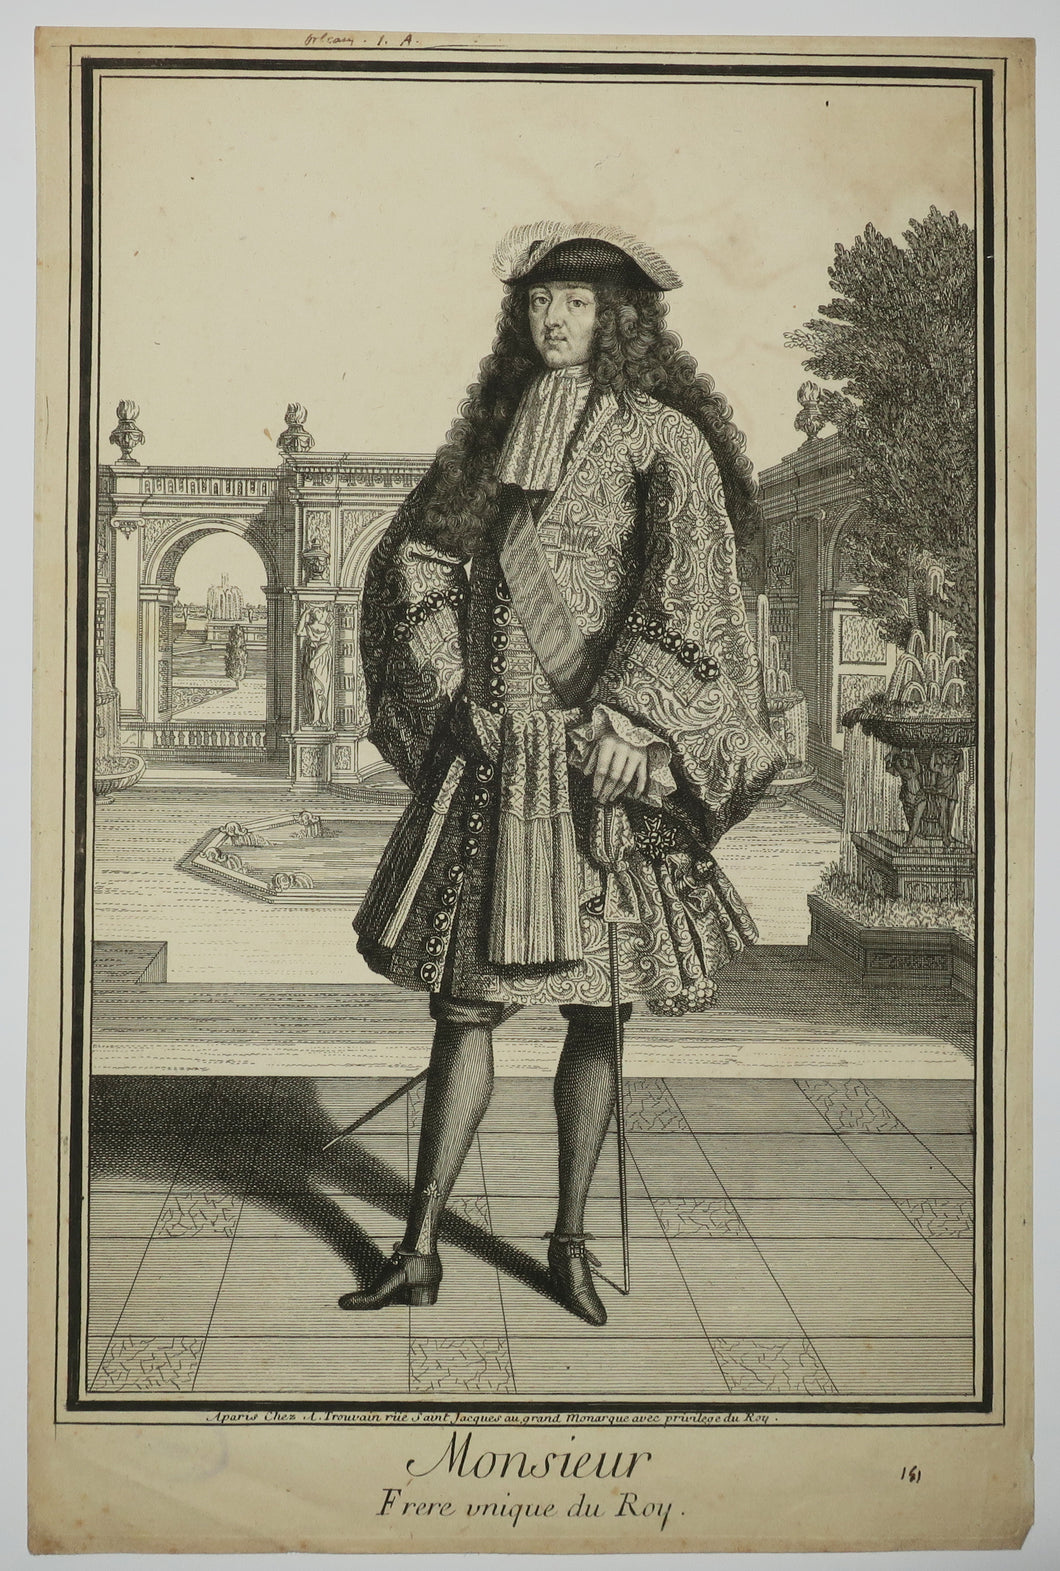 Monsieur, Frère unique du Roy (Philippe de France Duc d'Orléans, Frère de Louis XIV).  c.1690.